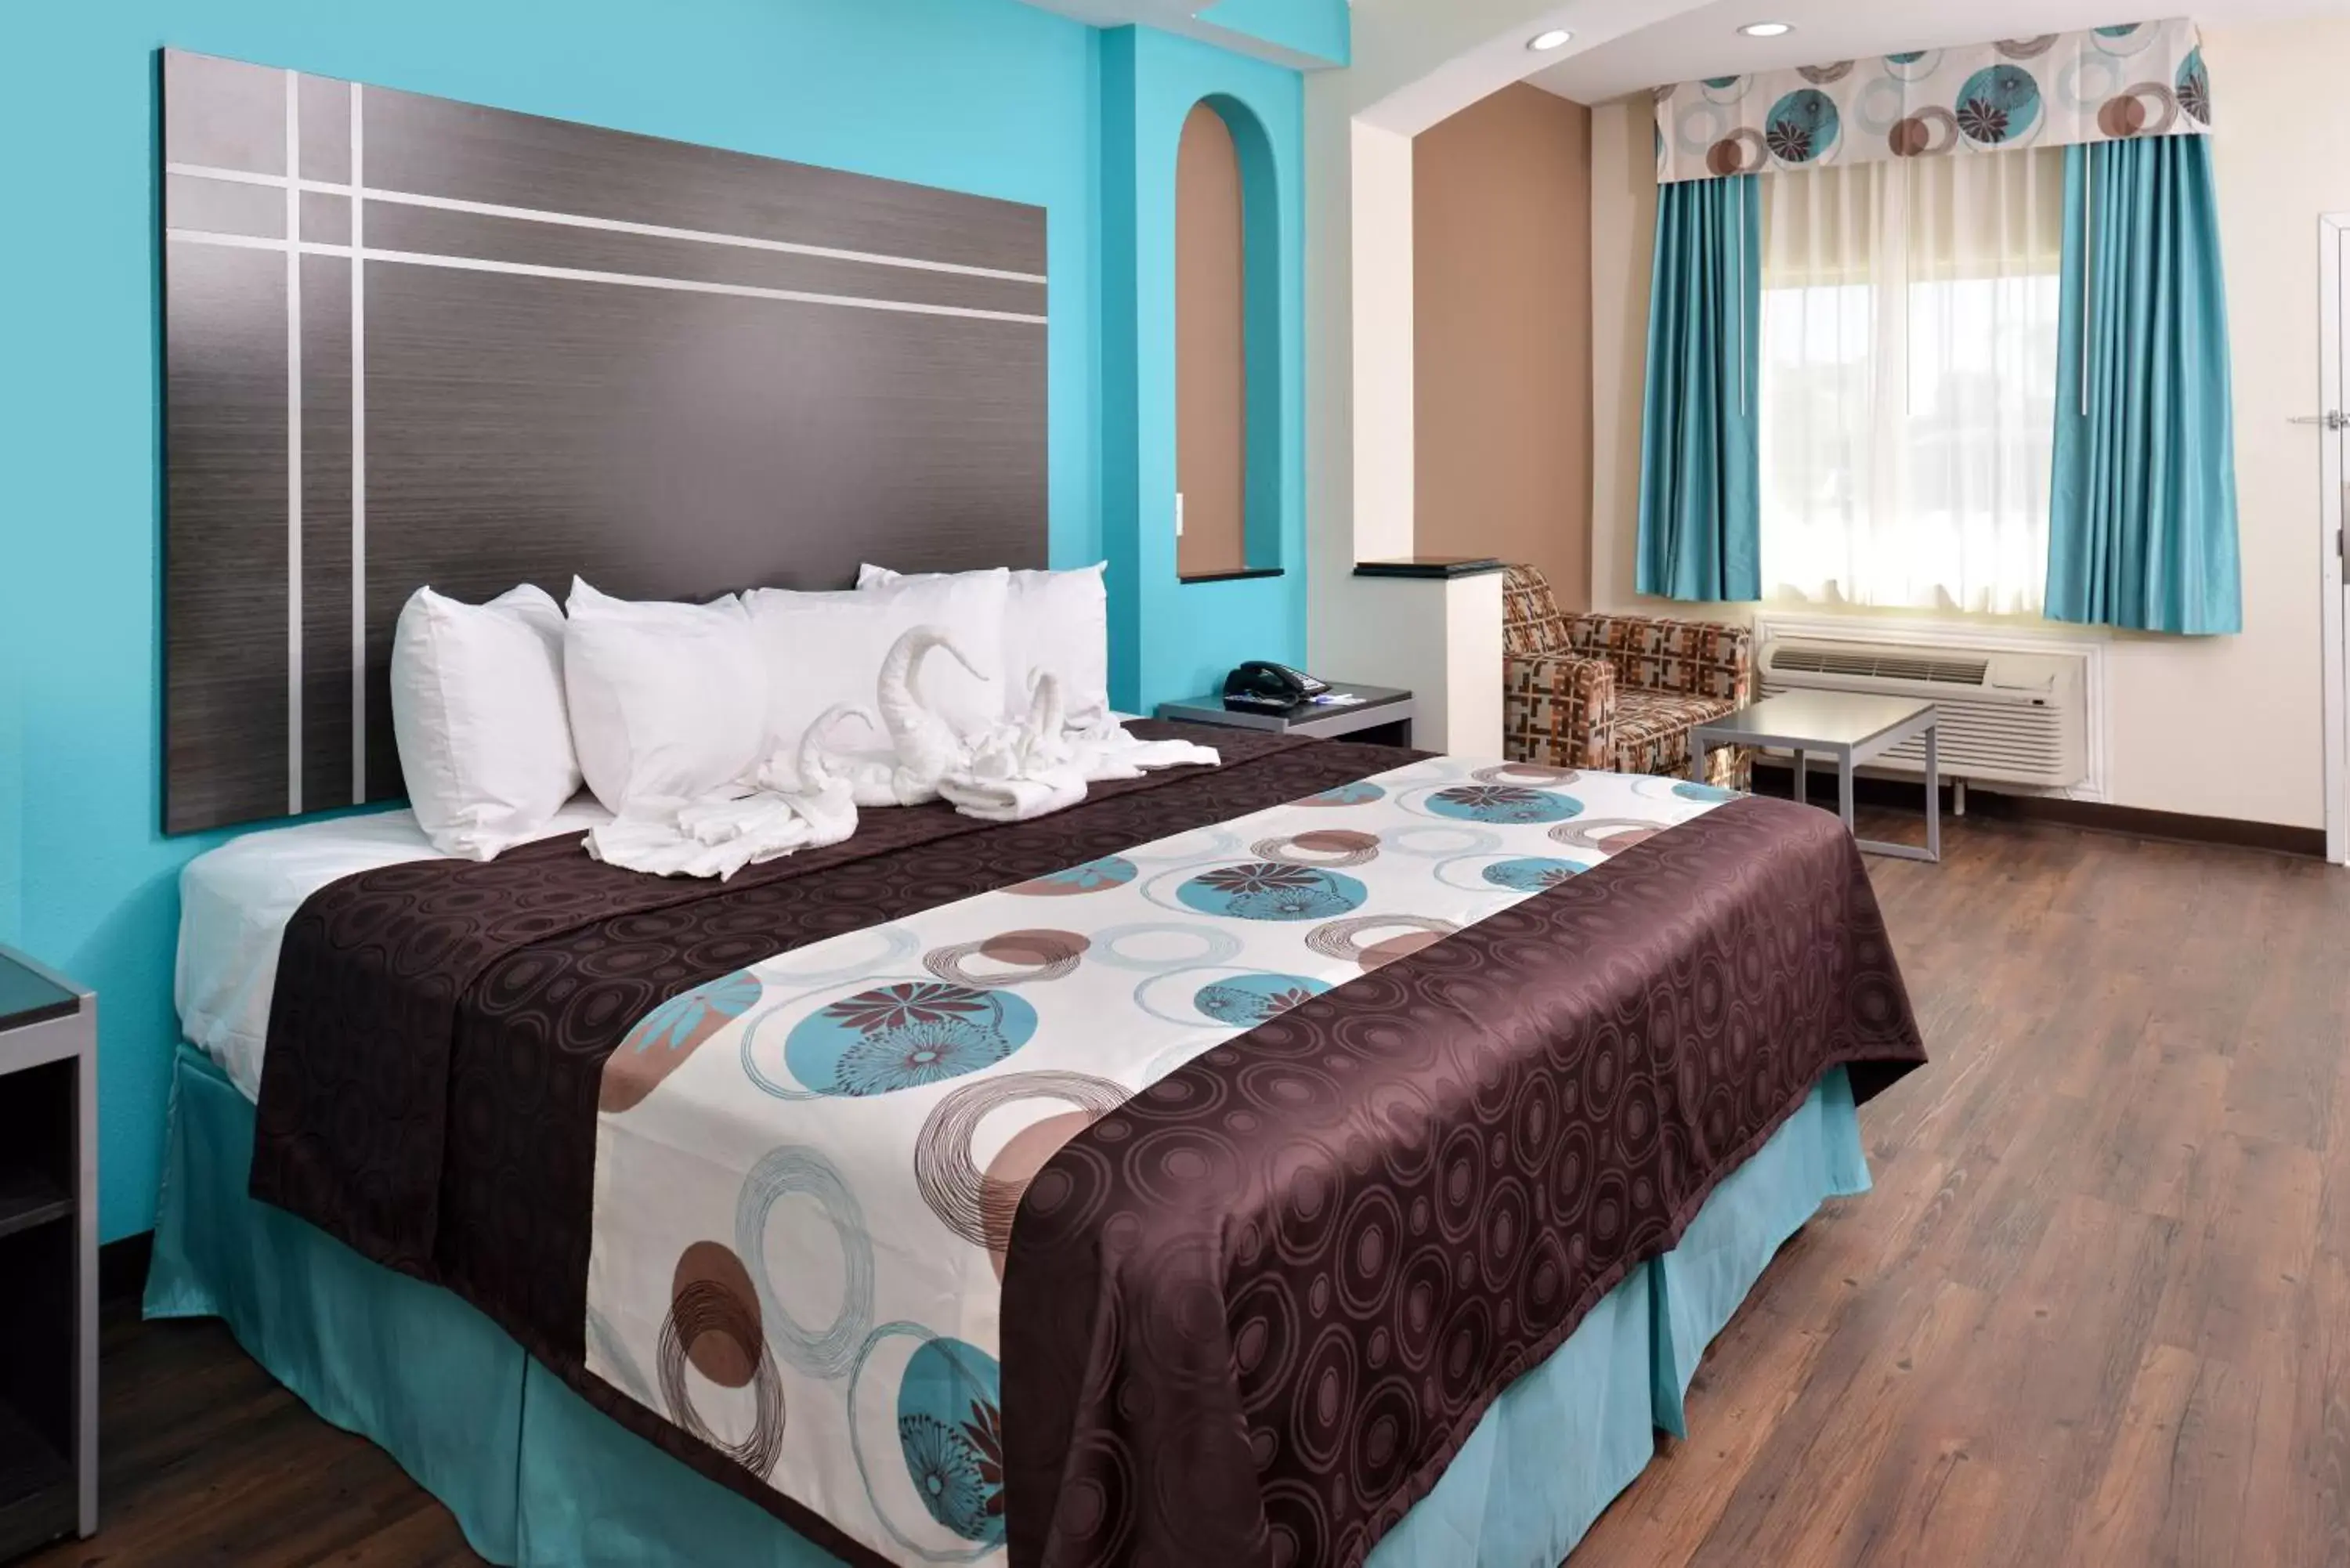 Bed, Room Photo in Americas Best Value Inn & Suites - Houston/Hwy 6 & Westpark